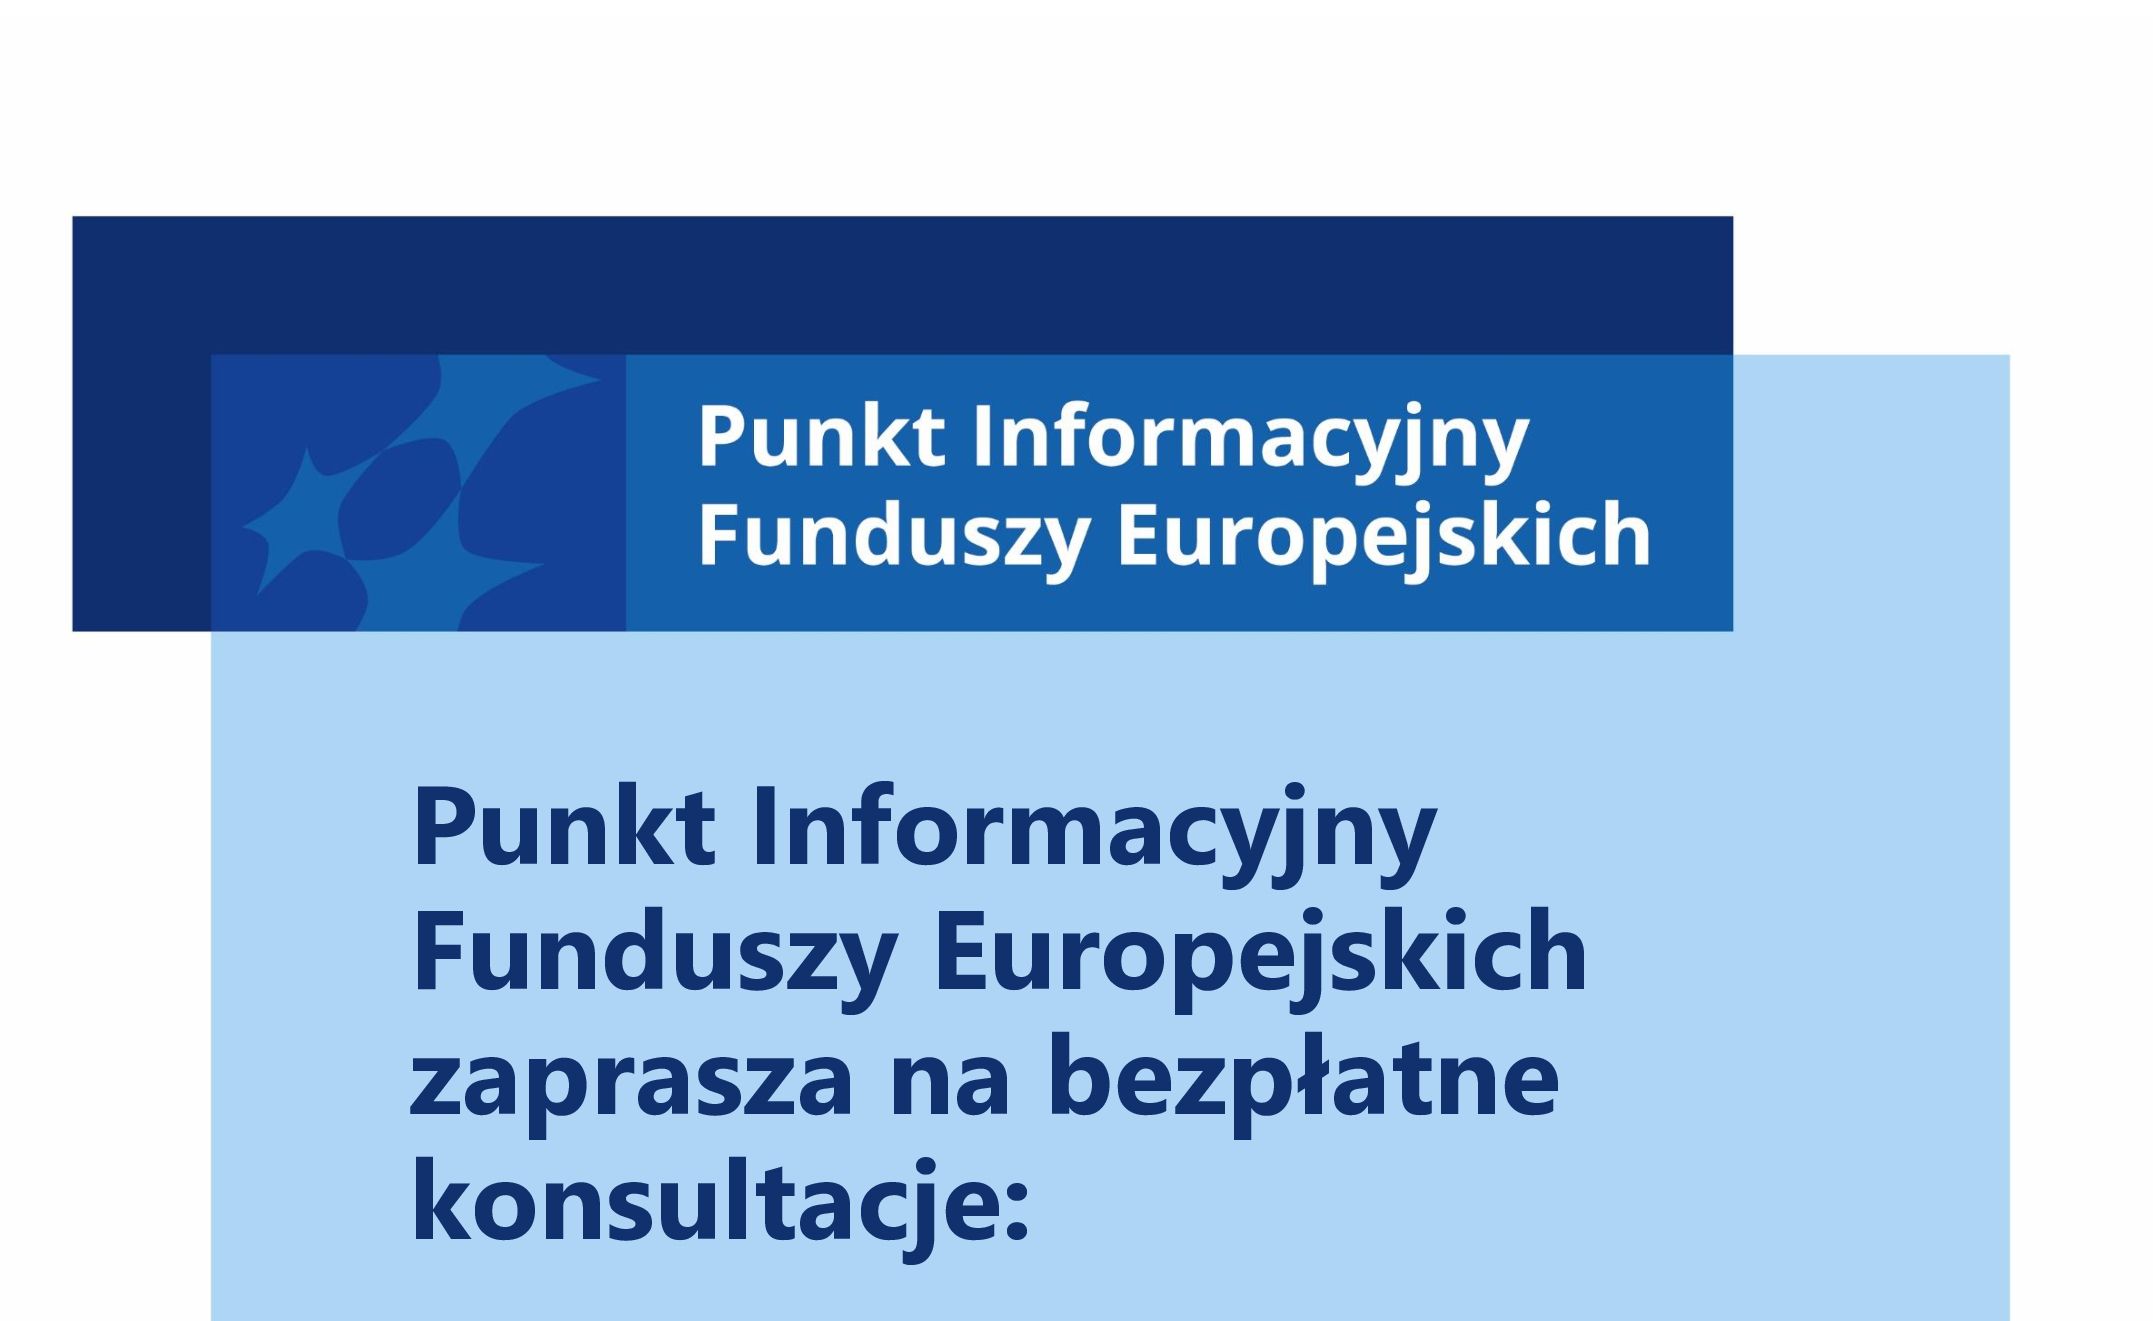 Przyjdź i zapytaj o dotacje! Punkt Informacyjny Funduszy Europejskich